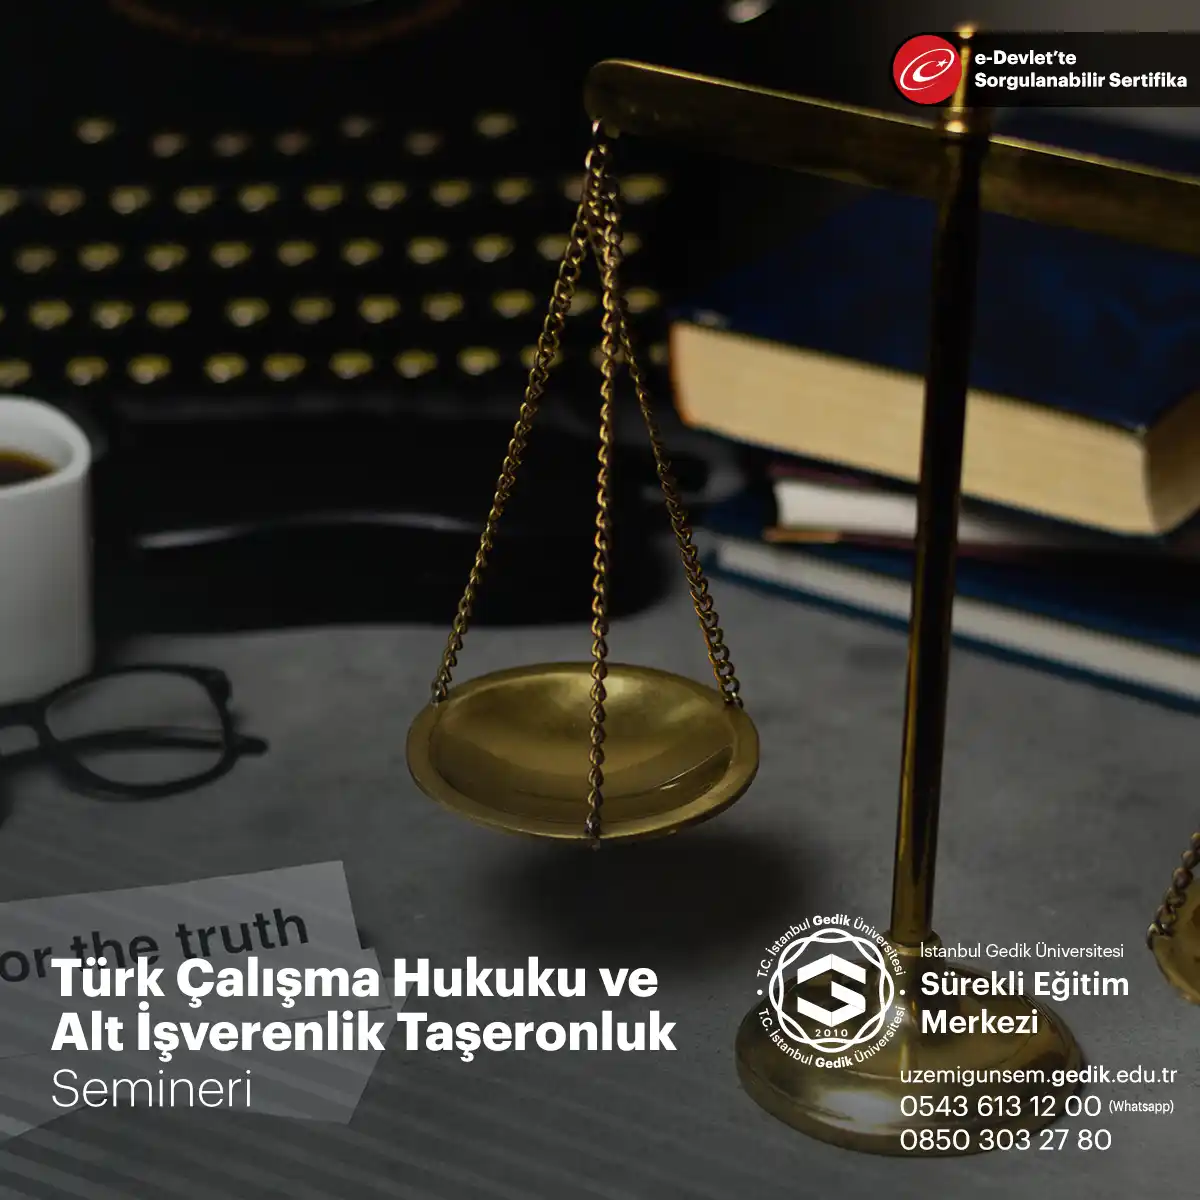 Türk Çalışma Hukuku'nda alt işverenlik (taşeronluk) ilişkisi, çalışanların korunması ve iş güvencesi sağlanması amacıyla düzenlemelere tabi tutulmuştur.